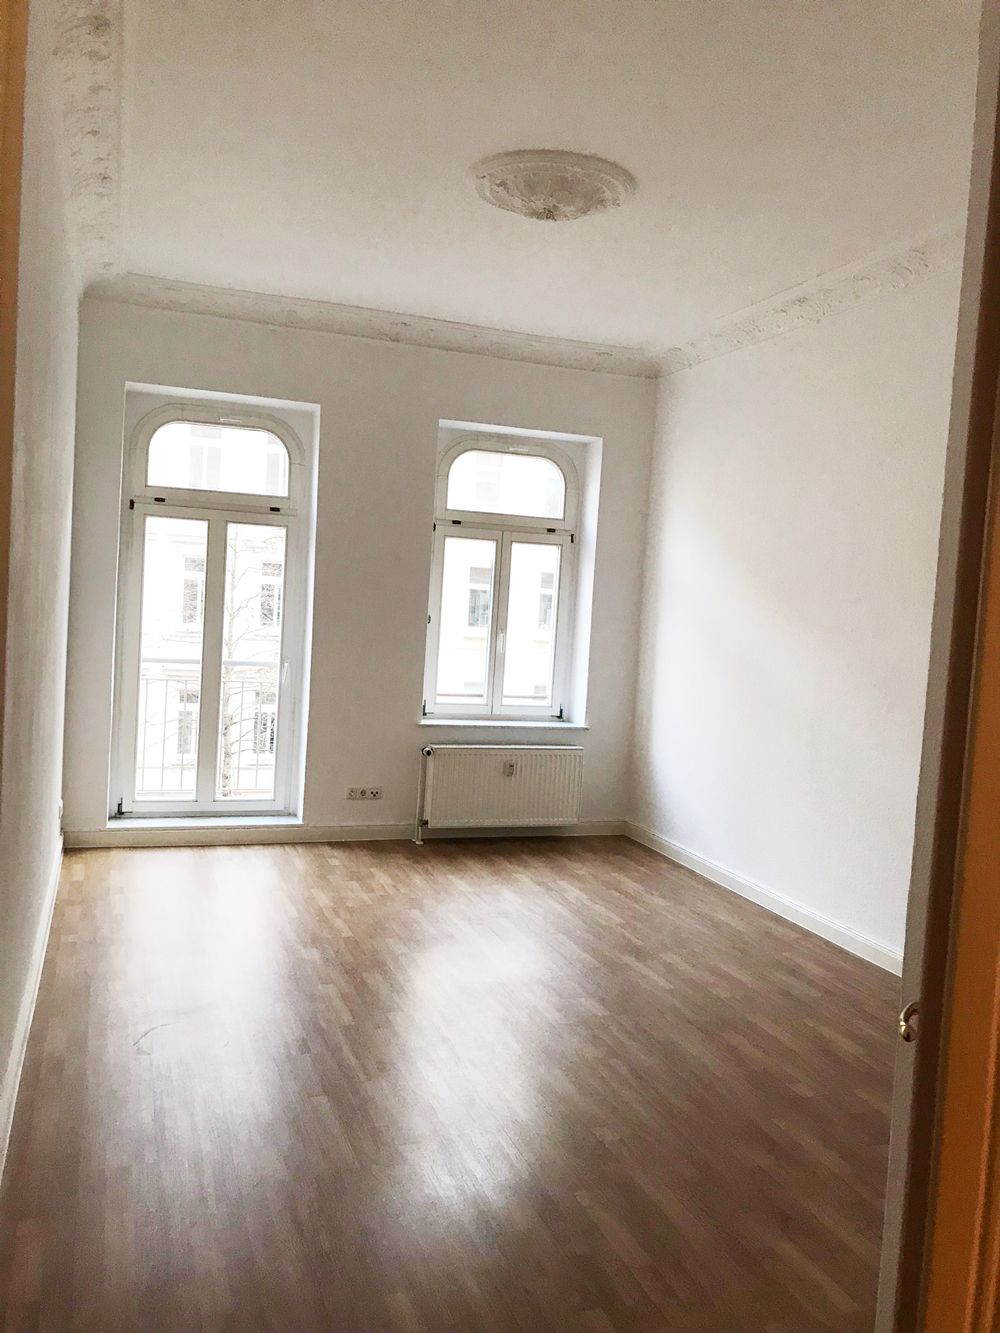 Unsere neue Wohnung in Leipzig | Julie Fahrenheit